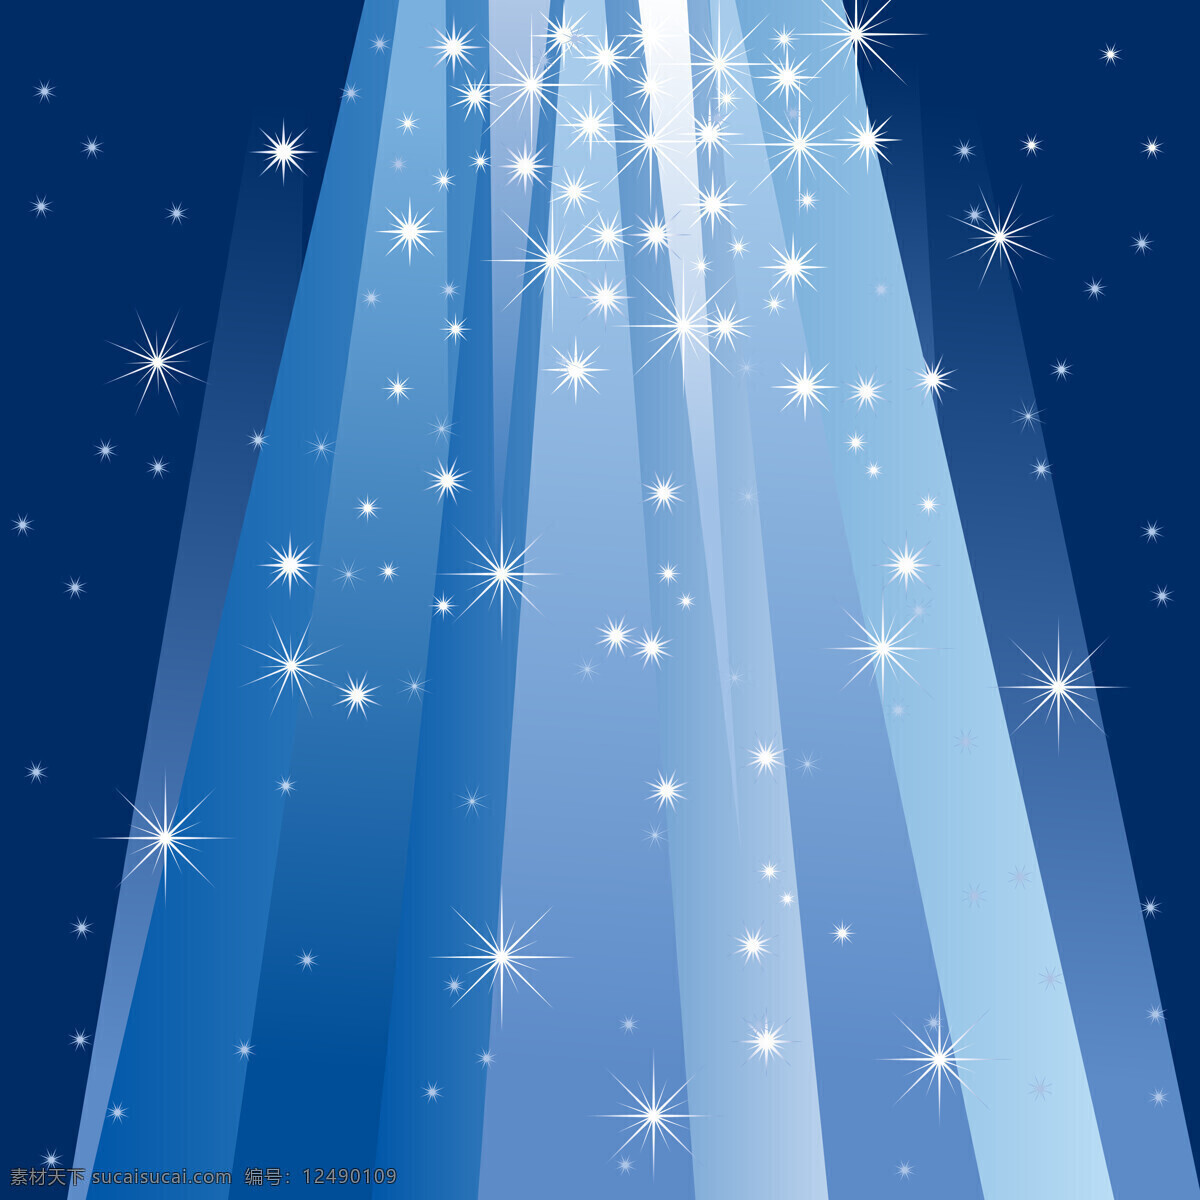 蓝色 星光 背景 圣诞节背景 圣诞节素材 圣诞球 节日 圣诞节装饰品 蓝色星光背景 节日庆典 生活百科